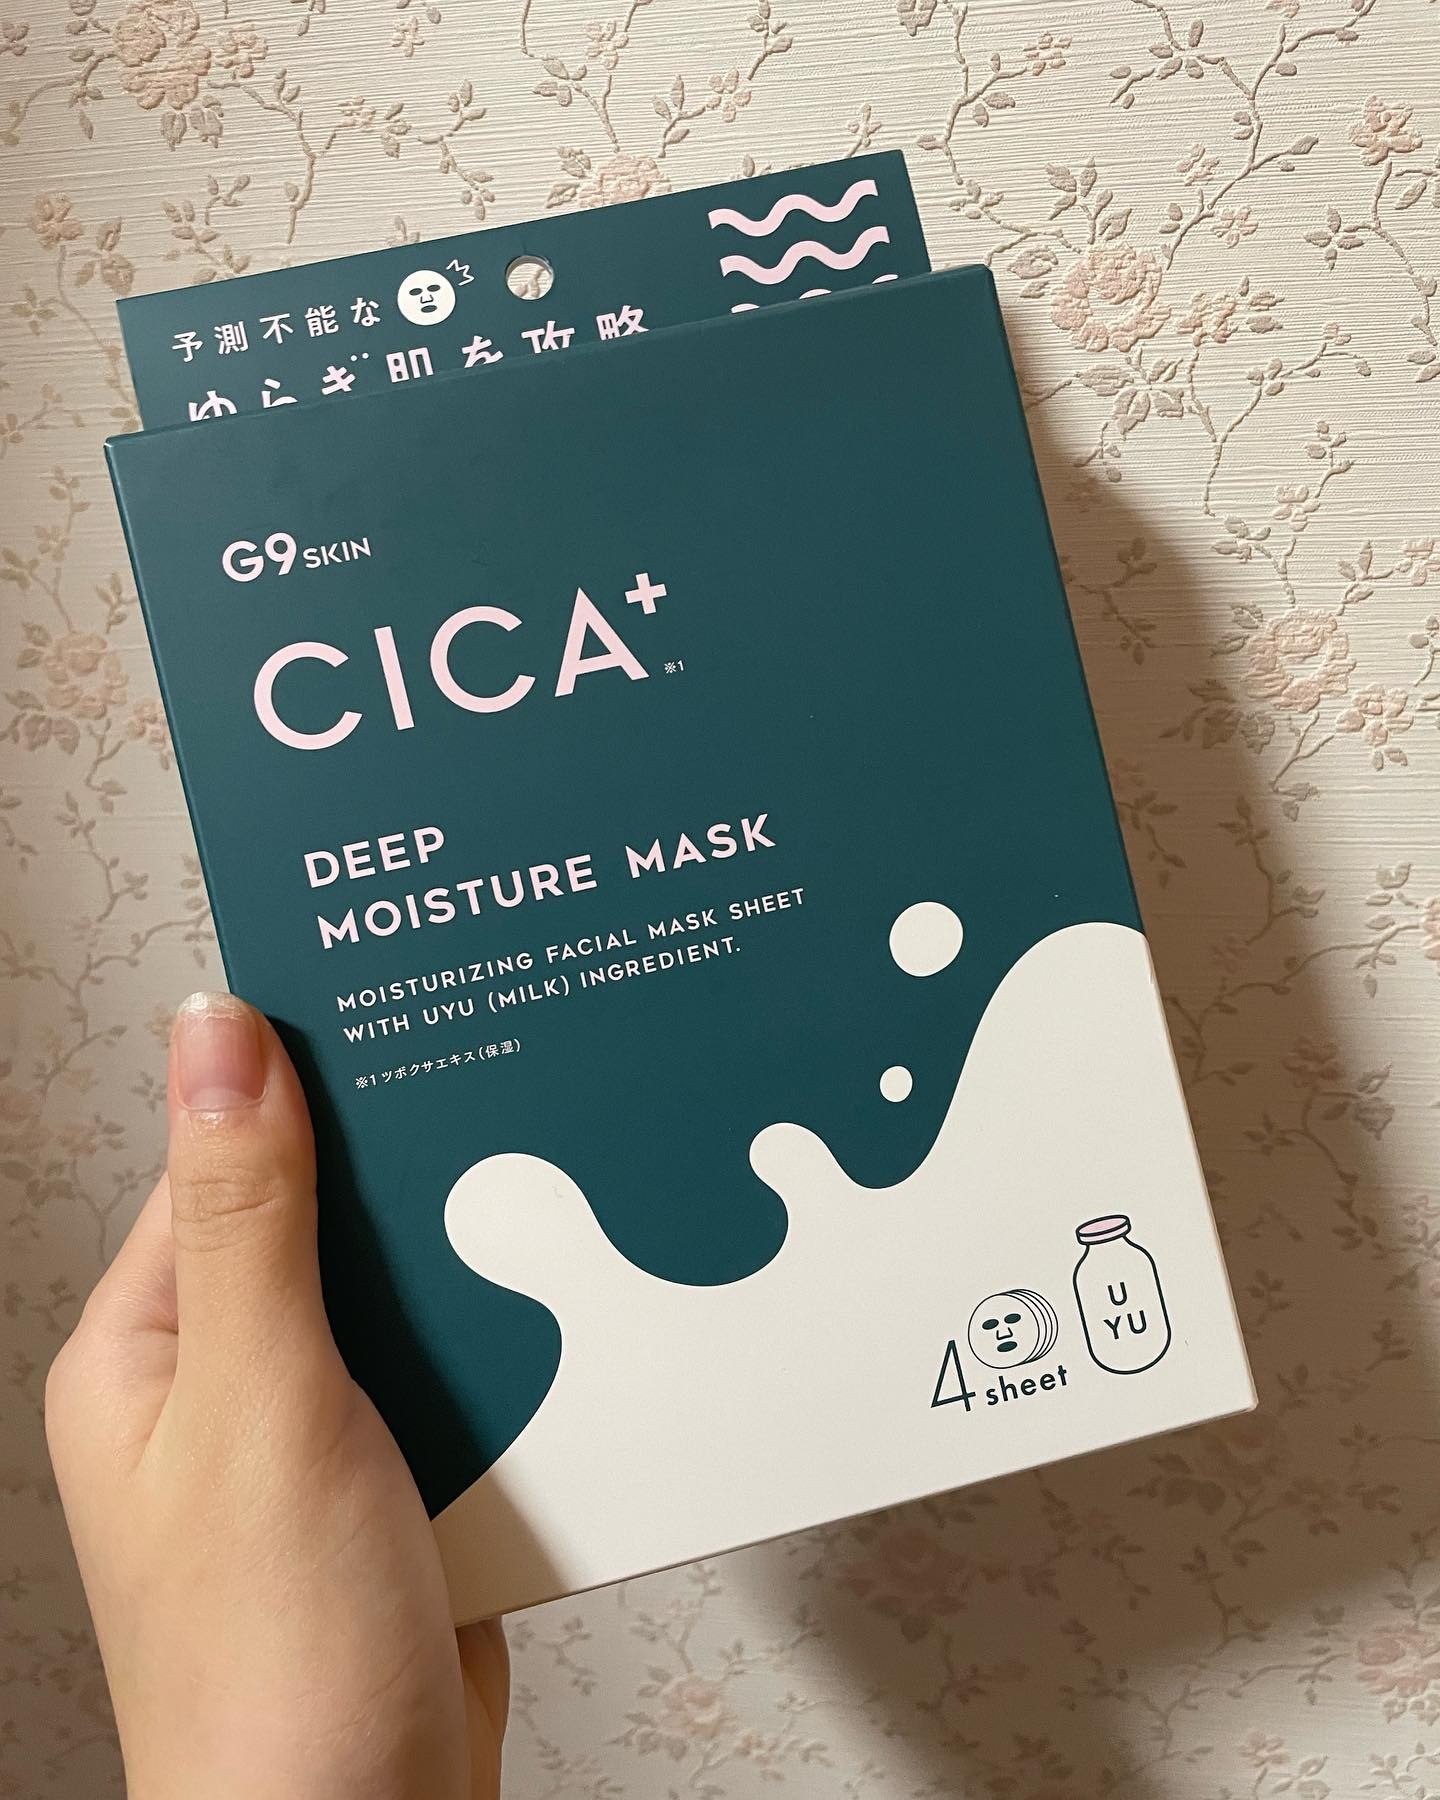 口コミ投稿：G9　CICA+DEEPMOISTUREMASK美容液成分で構成された使うたびに肌が整う不思議なマスク…